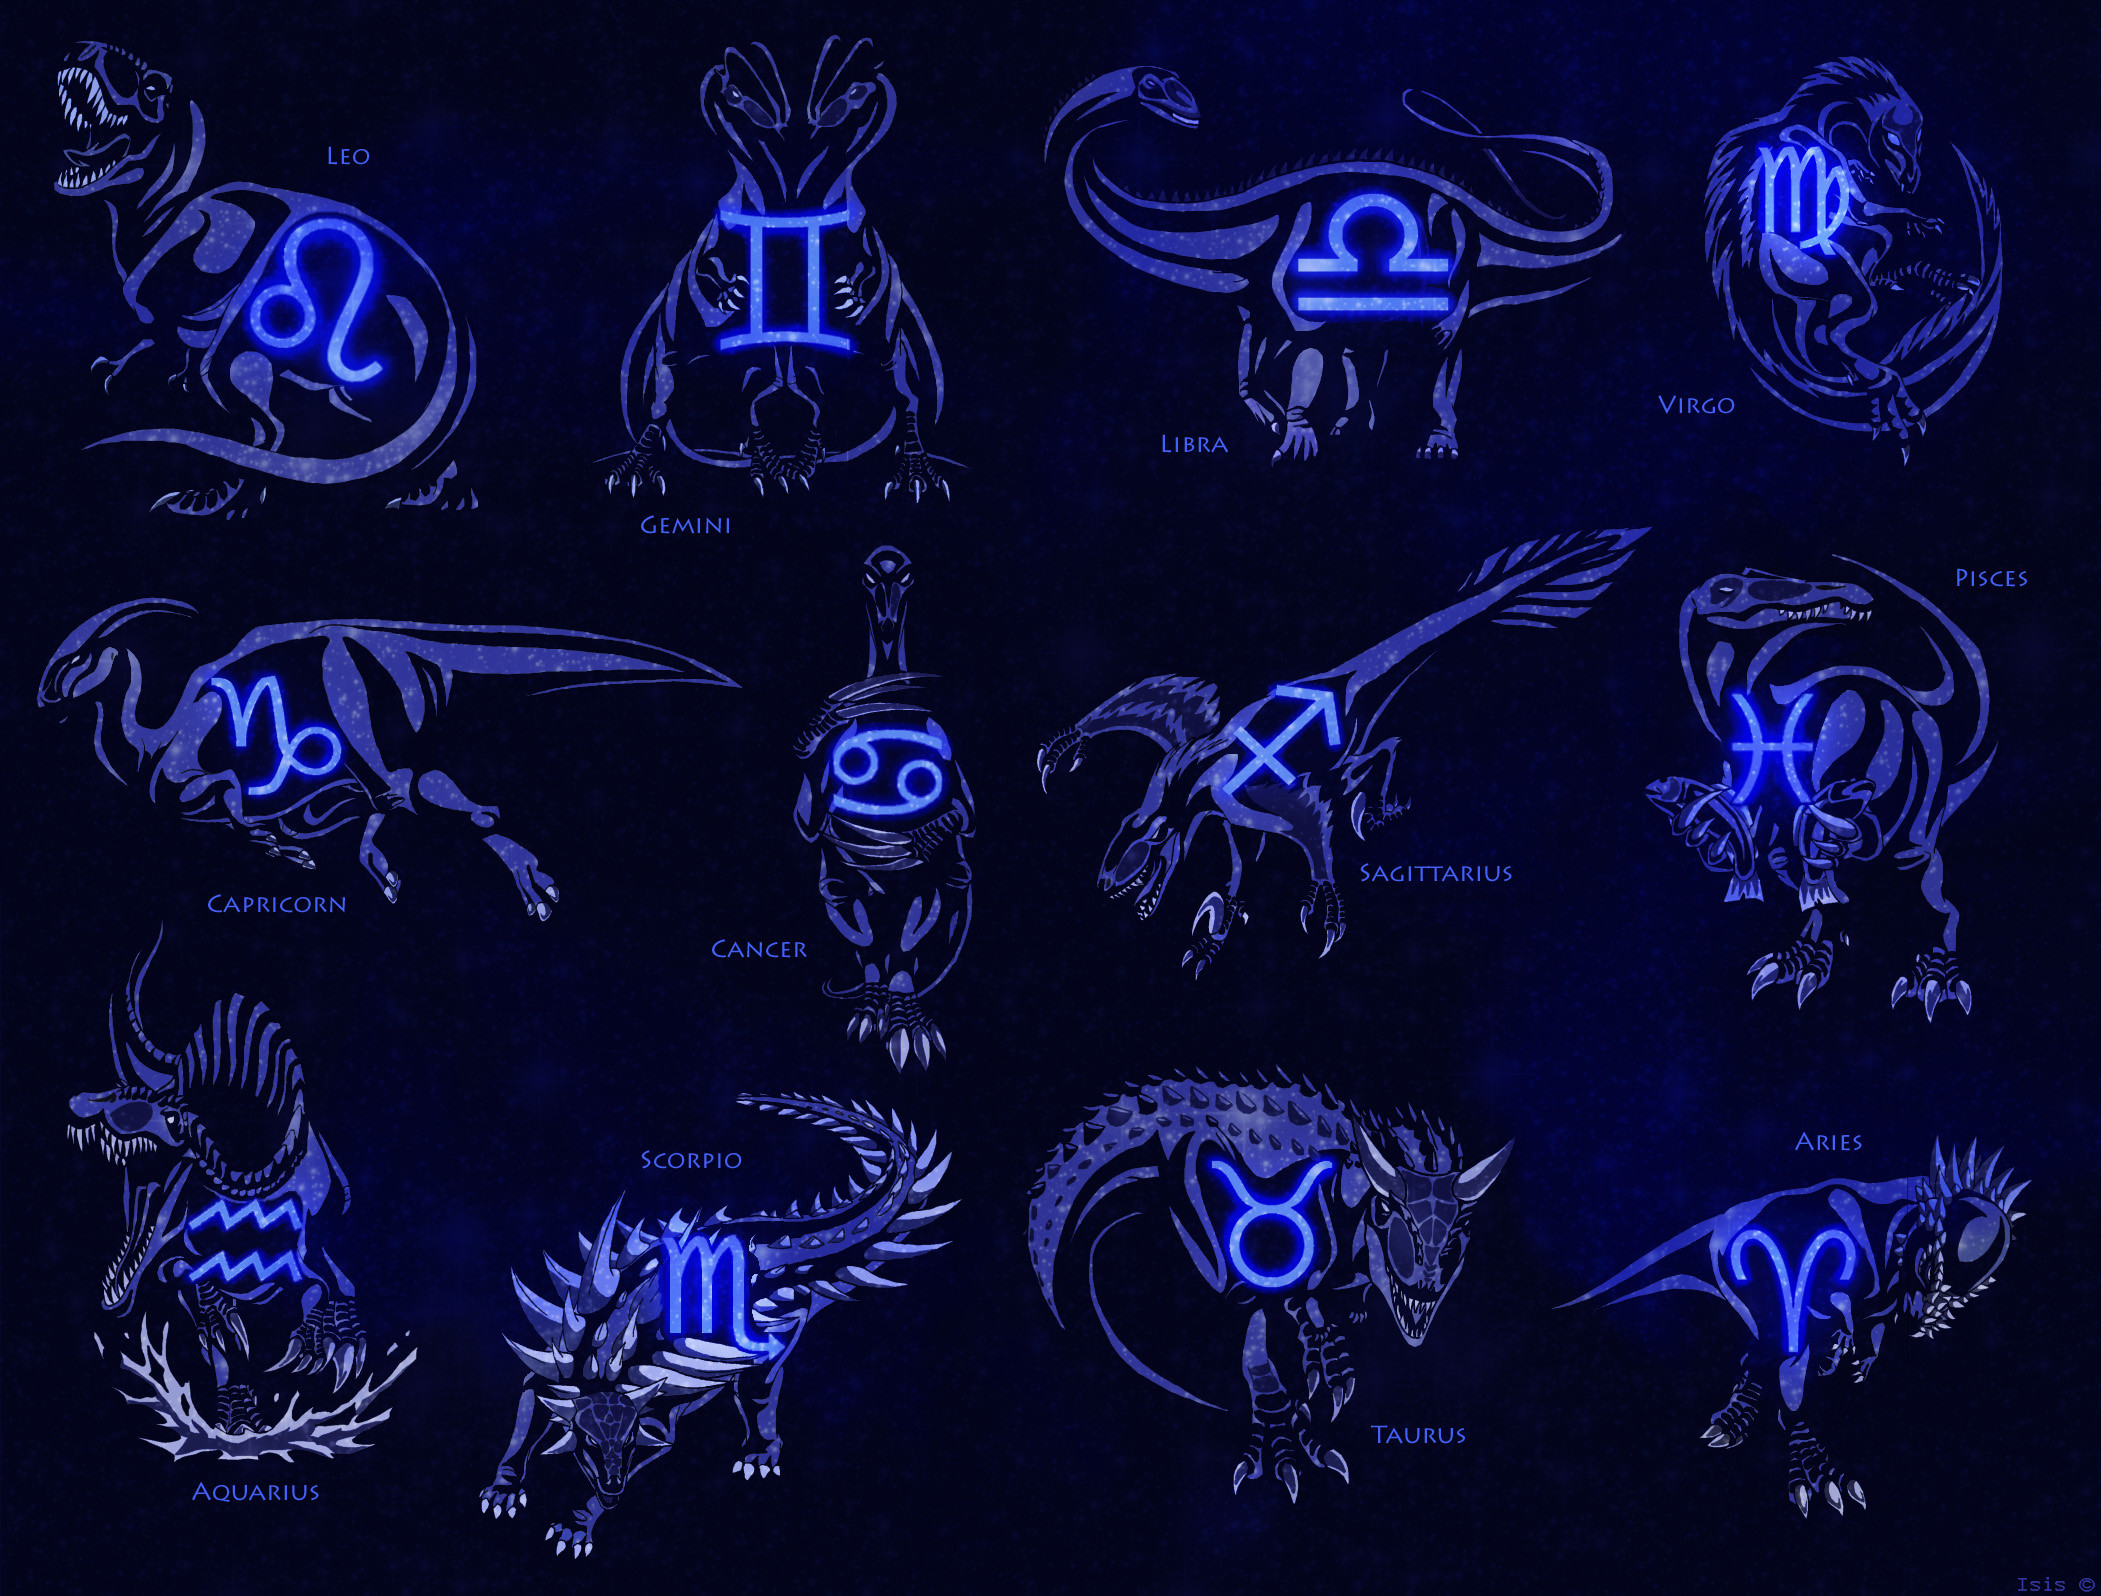 Zodiac signs: Cancer by Gosia Nowak on Dribbble